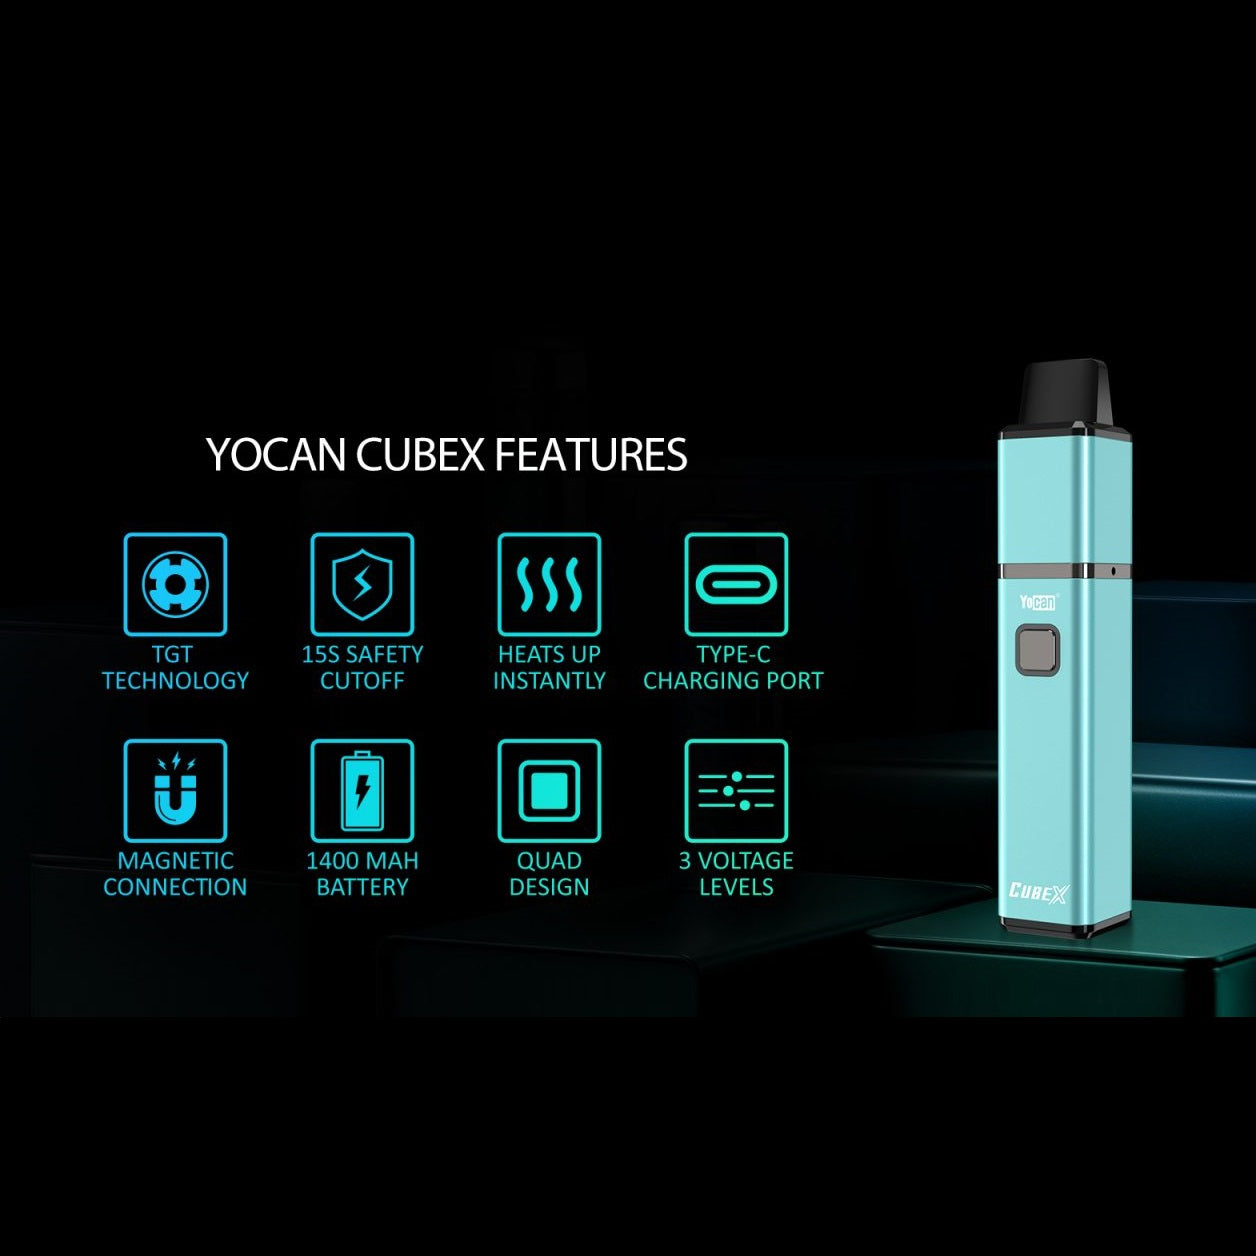 Yocan CubeX Vaporizer features